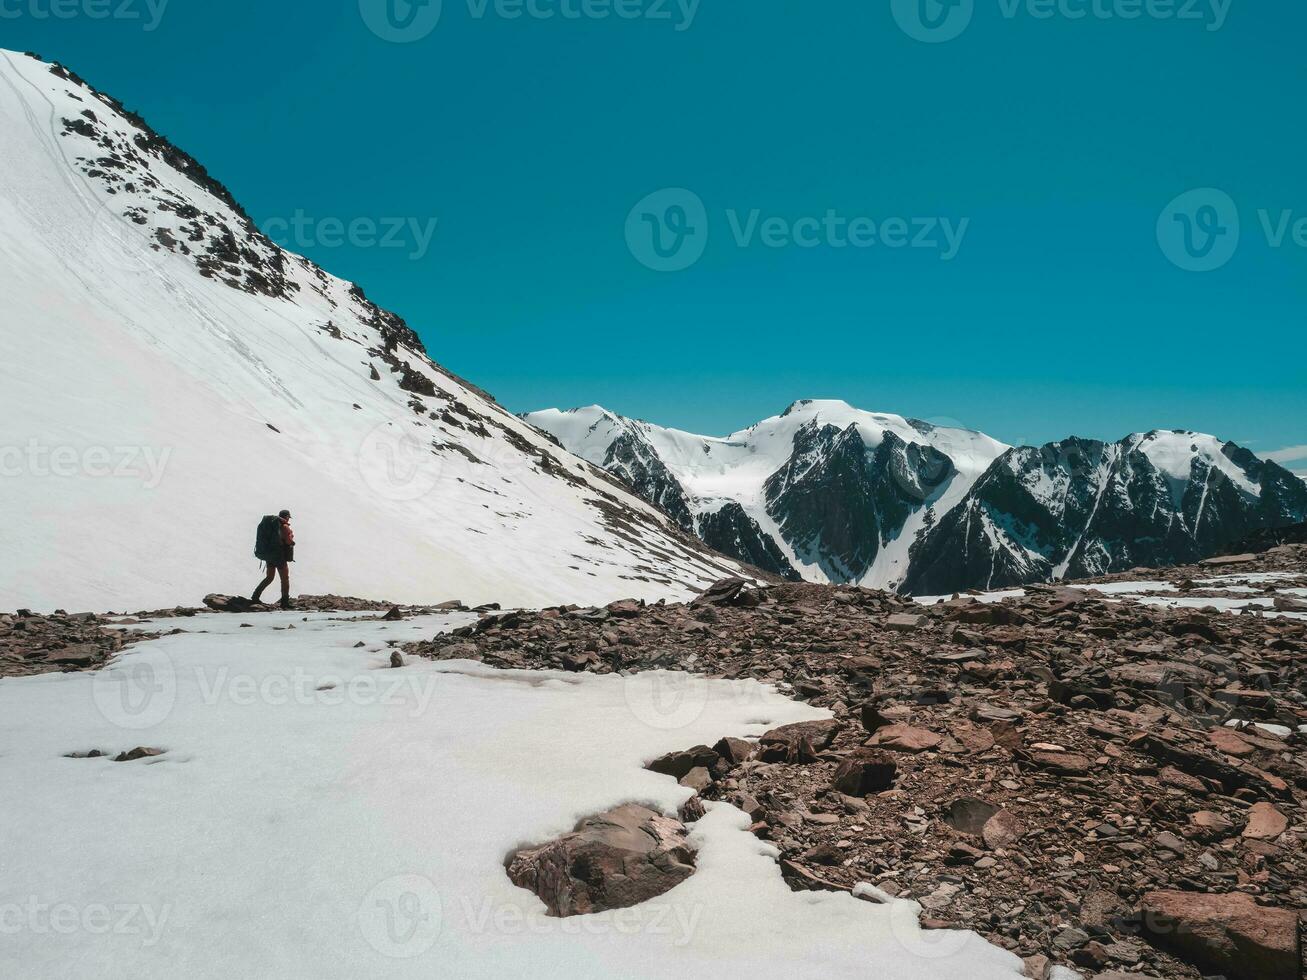 solo caminata a lo largo el nevadas montañas. extremo recreación y montaña turismo. un masculino caminantes abajo el montaña camino. en el fondo, grande nevadas montañas. foto